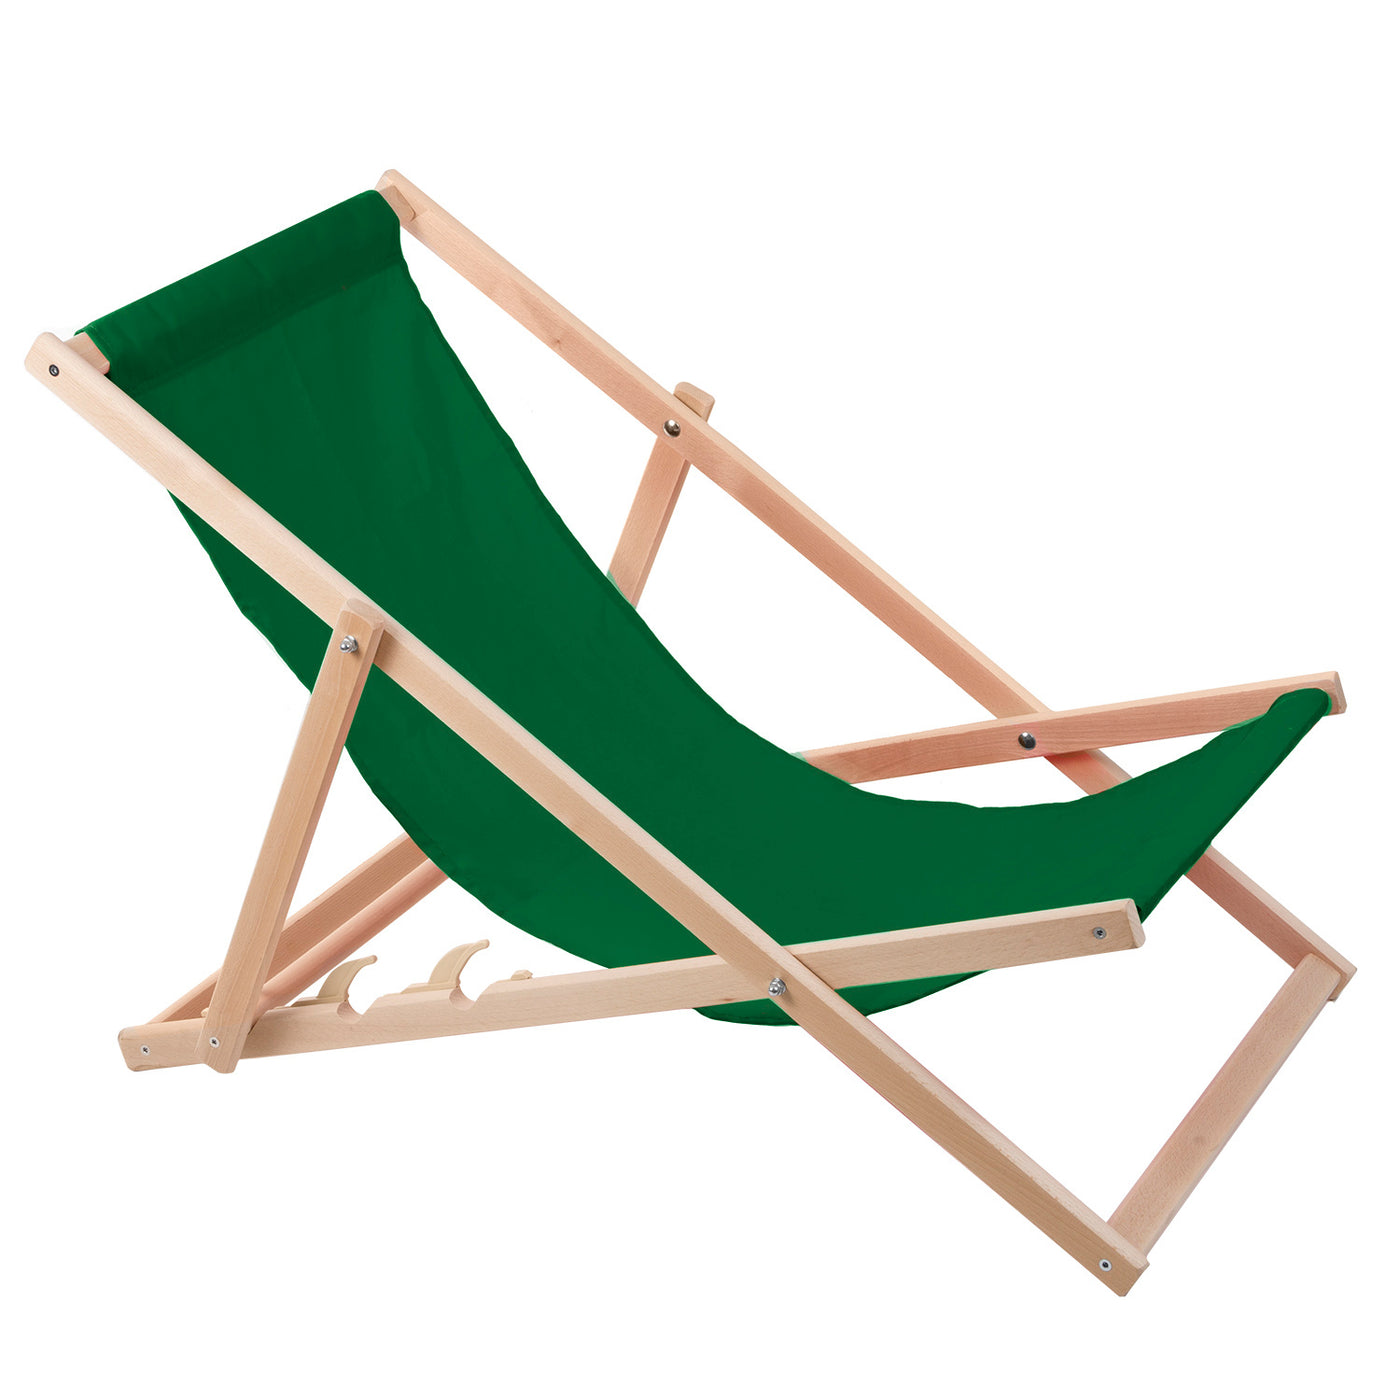 2 komfortowe leżaki z drewna, zielone, idealne na plażę, balkon, taras